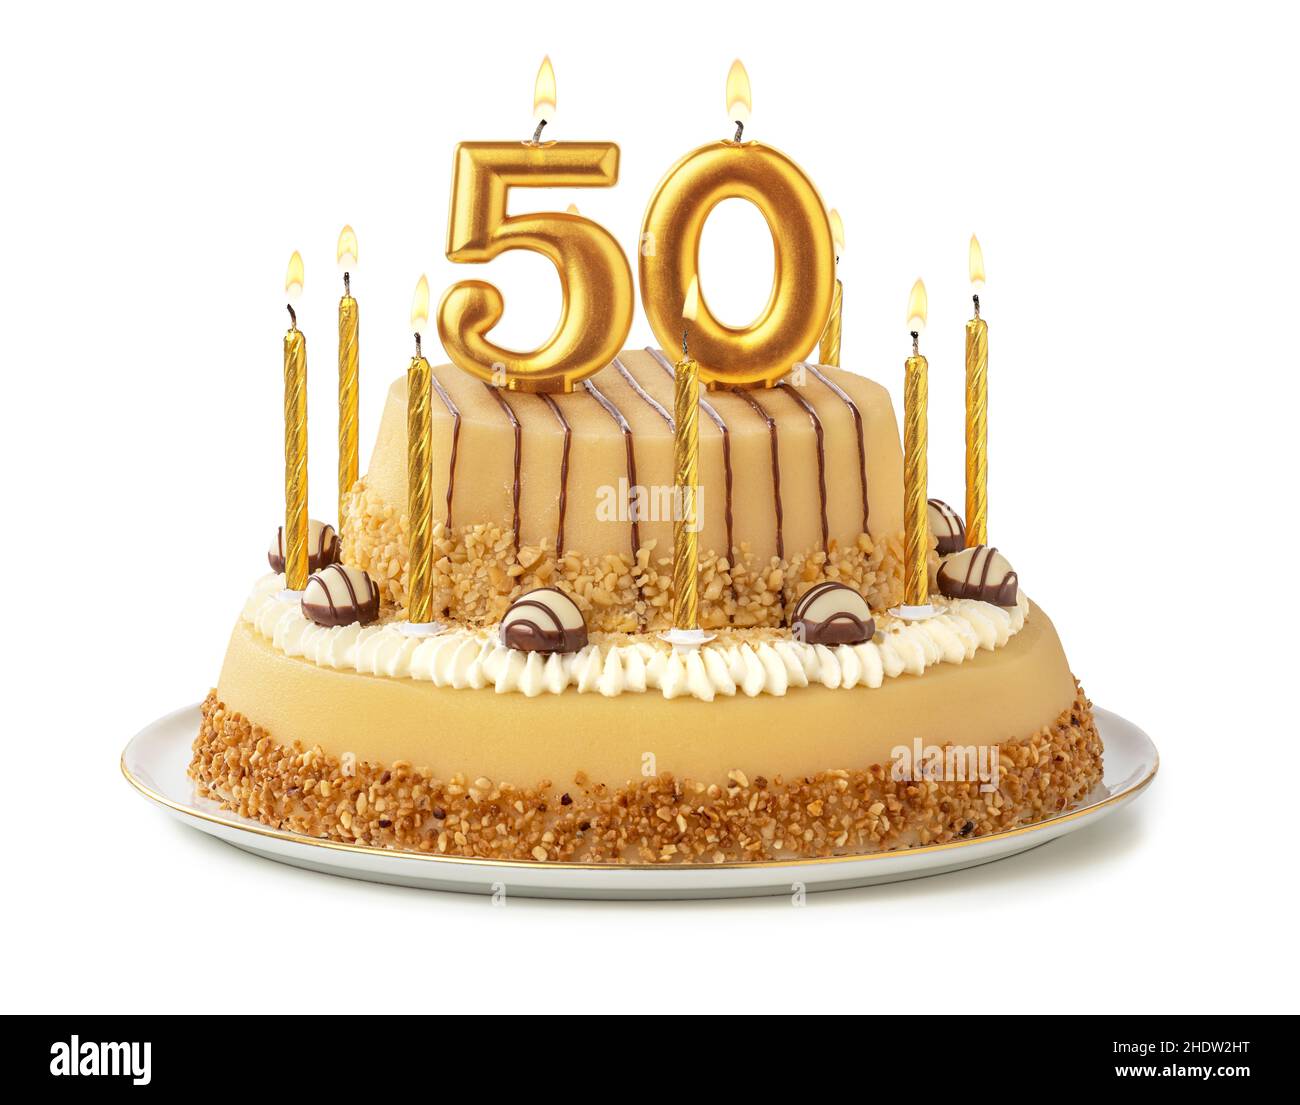 50 compleanno immagini e fotografie stock ad alta risoluzione - Alamy